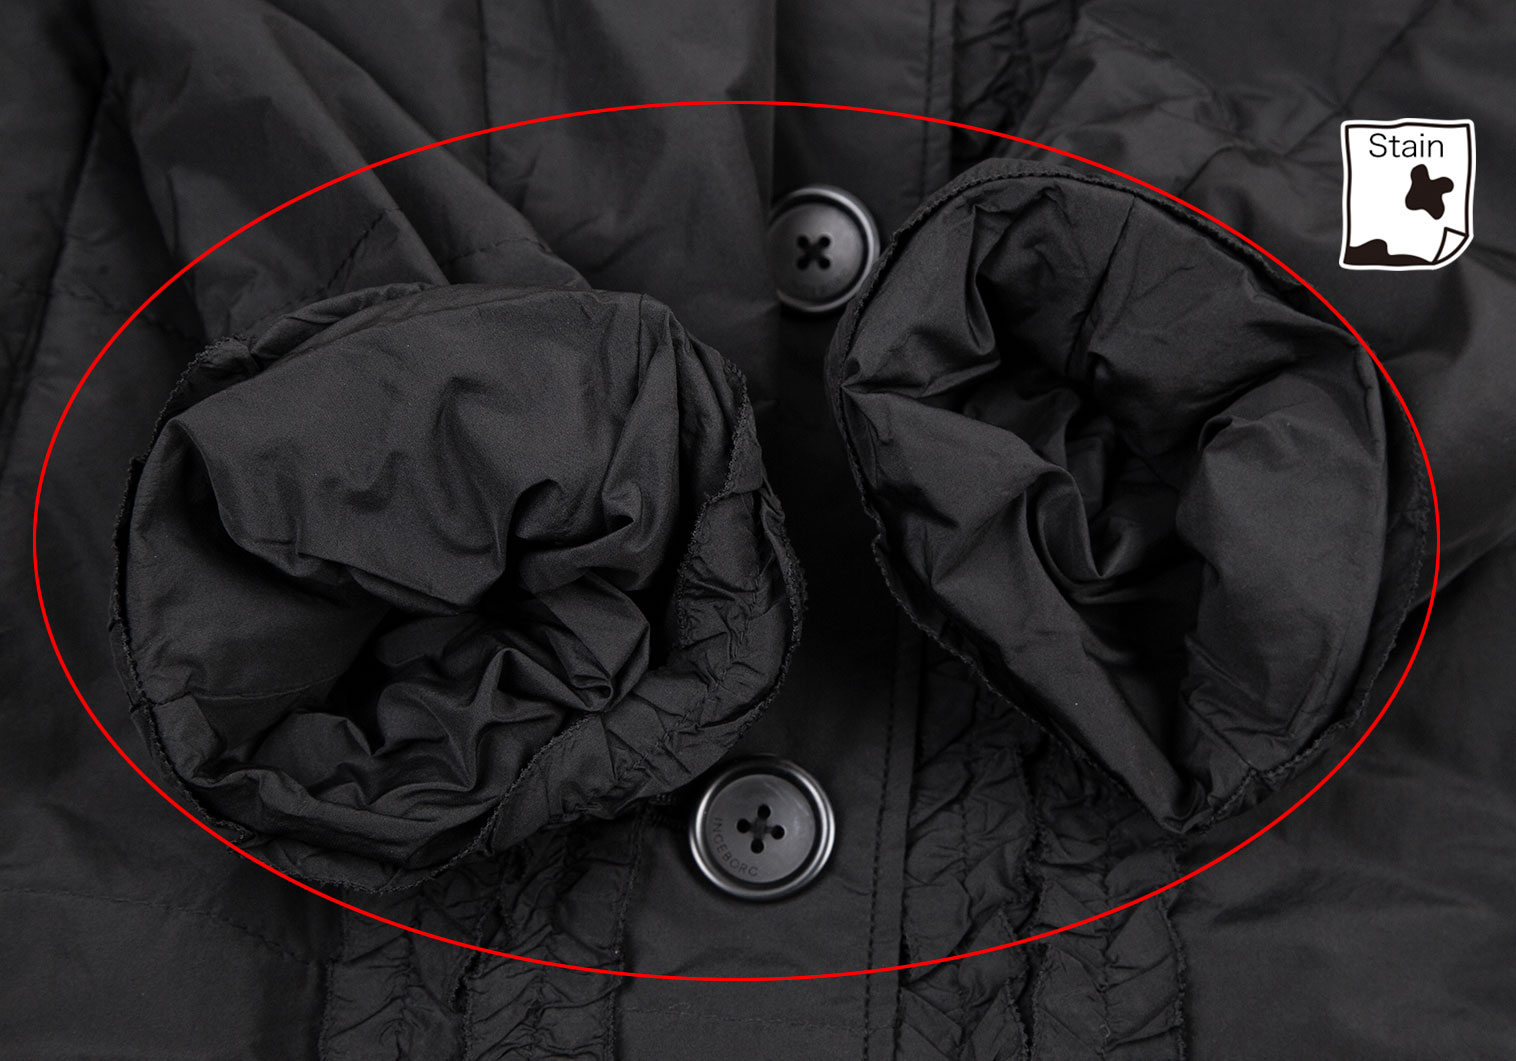 インゲボルグINGEBORG フリル装飾中綿コート 黒11